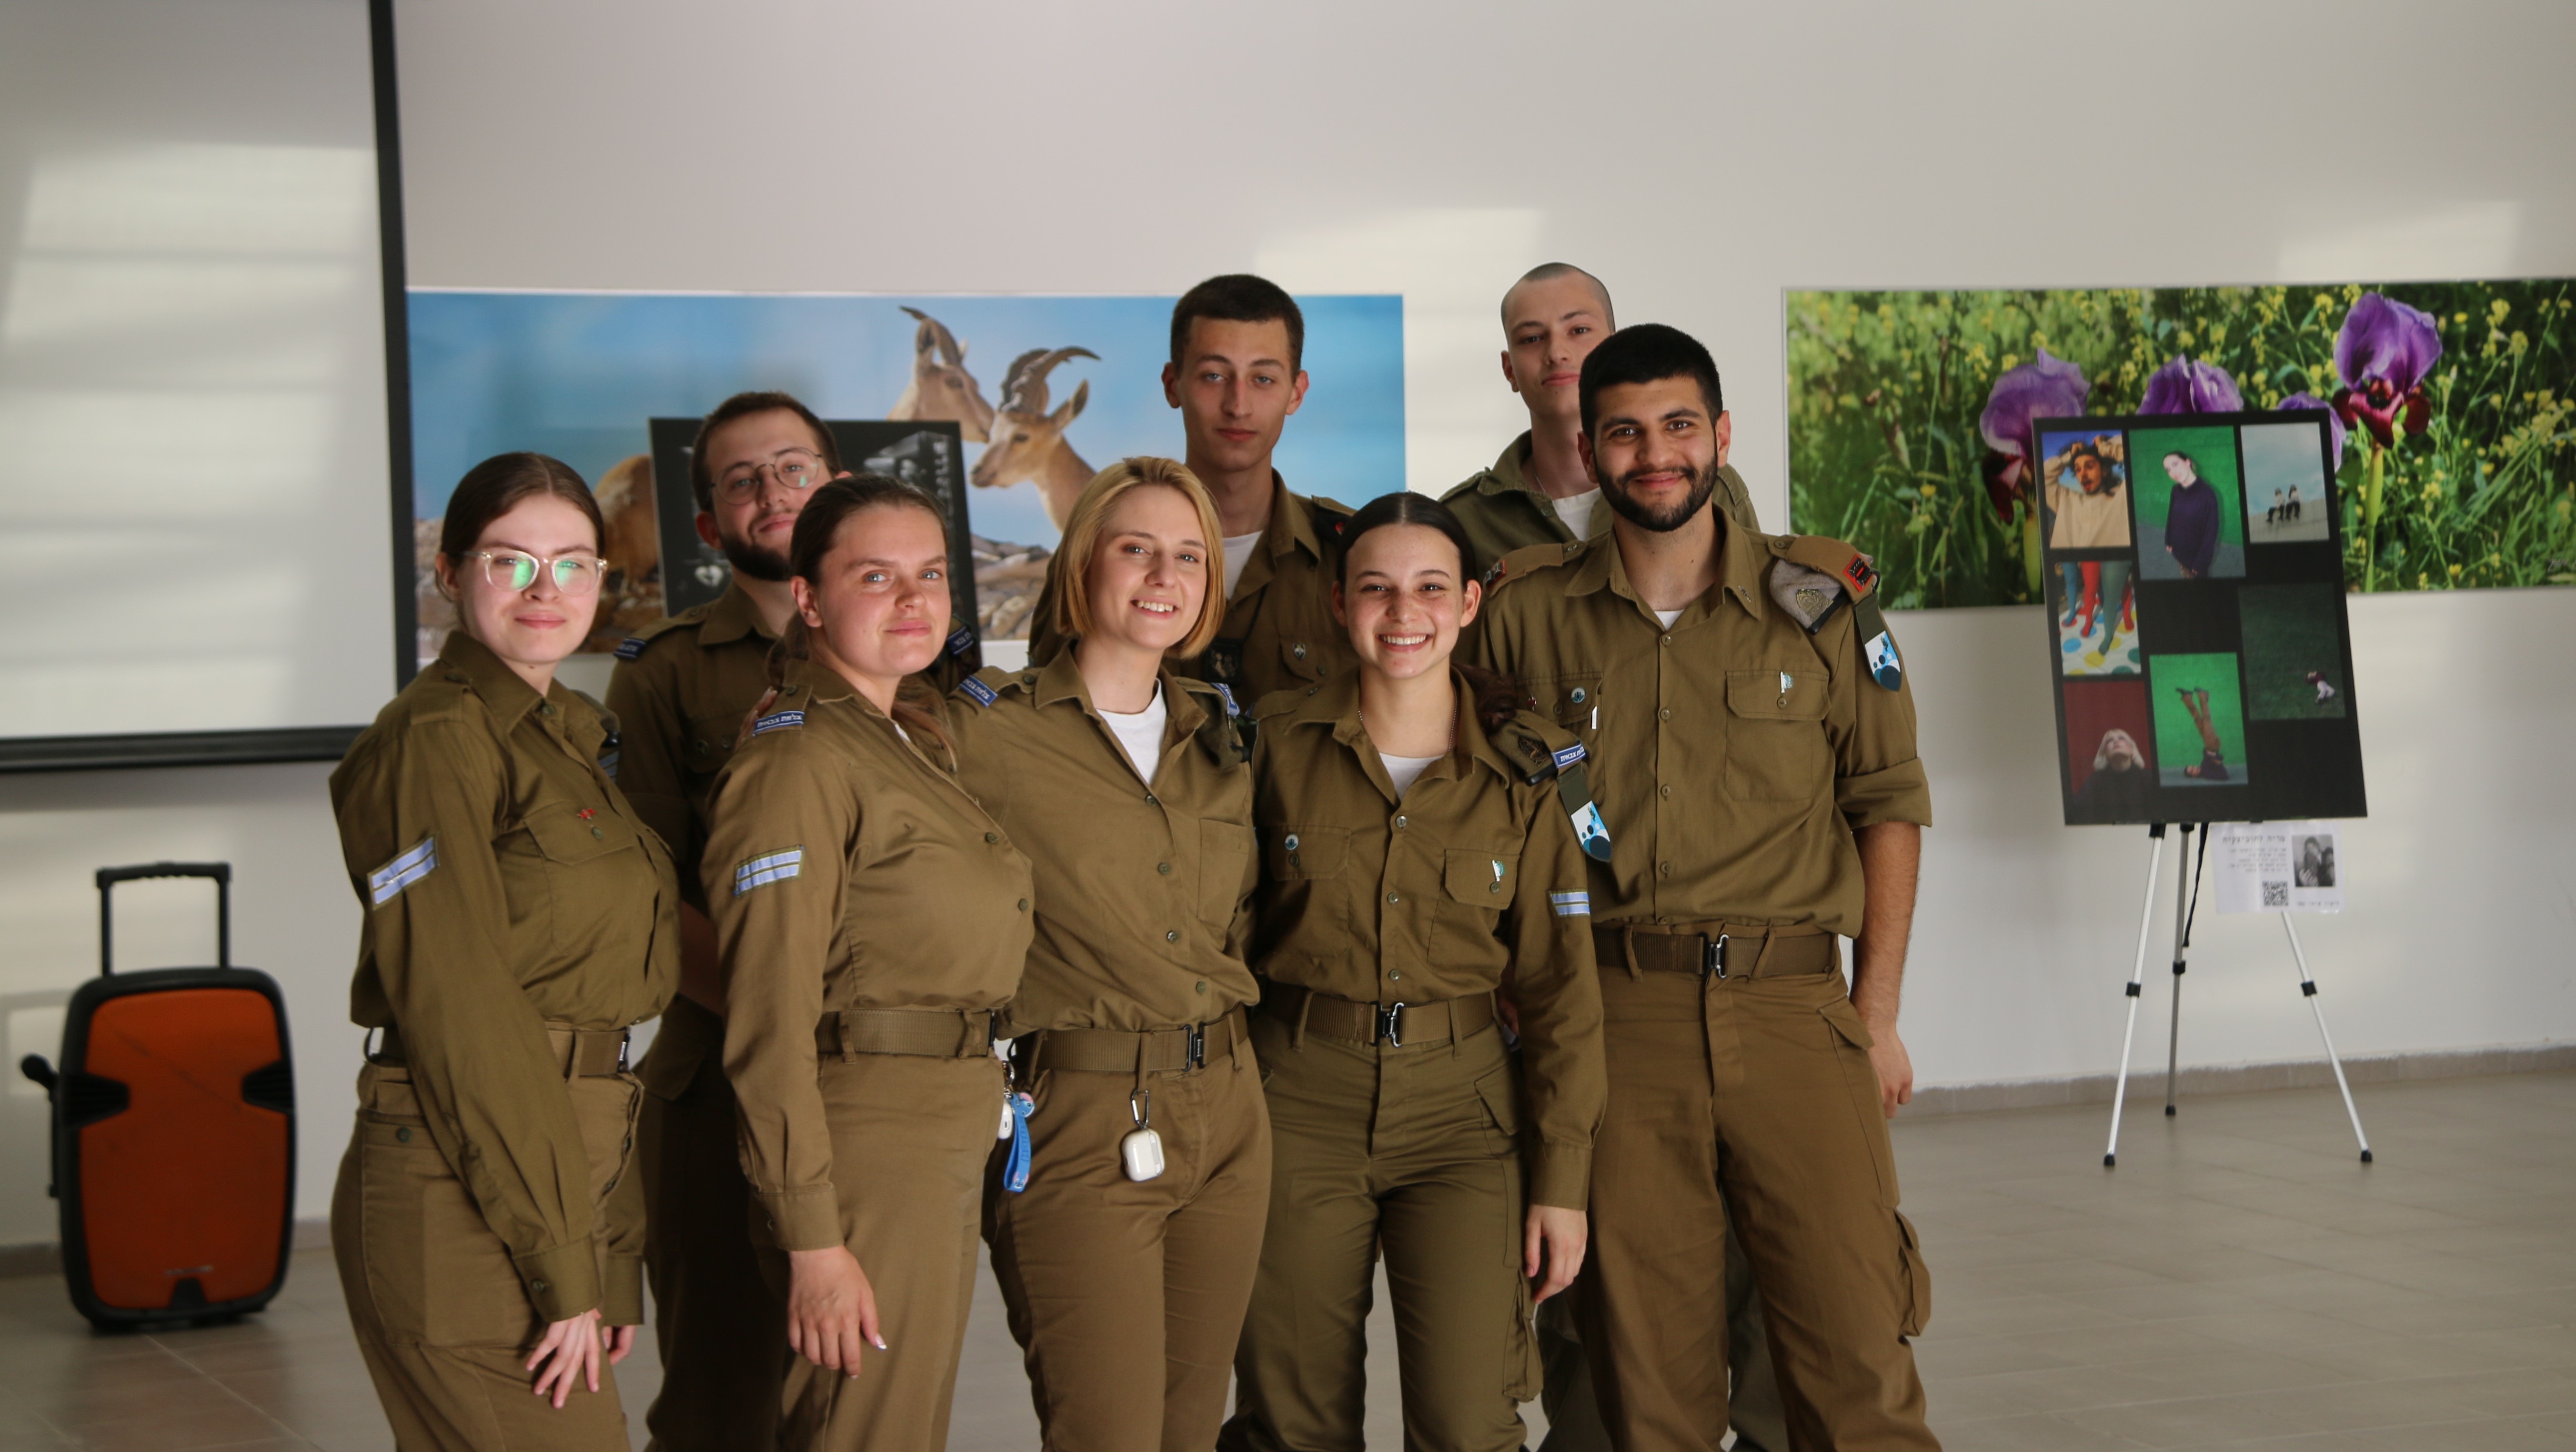 לאה (במרכז) והחיילים המציגים את יצירותיהם בתערוכה בעיר הבה"דים. צילום: אילנה גלושקו